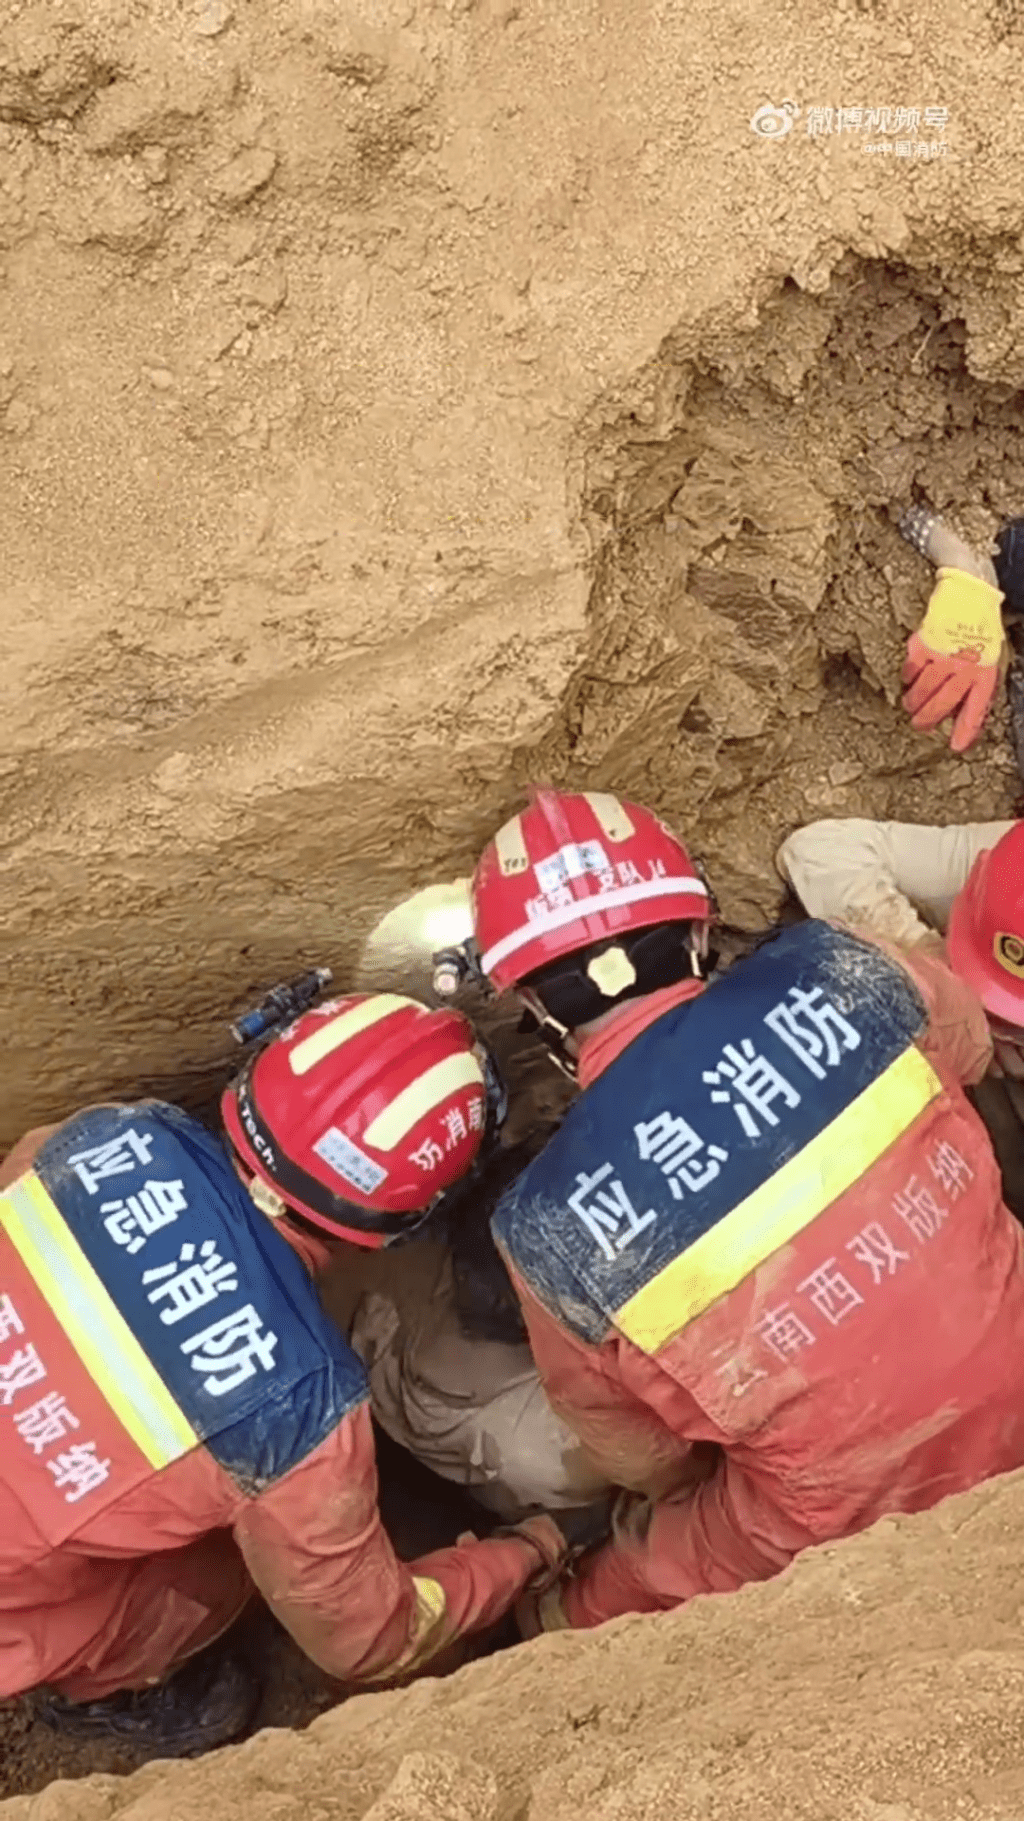 消防员现场抢救被困人士。 中国消防